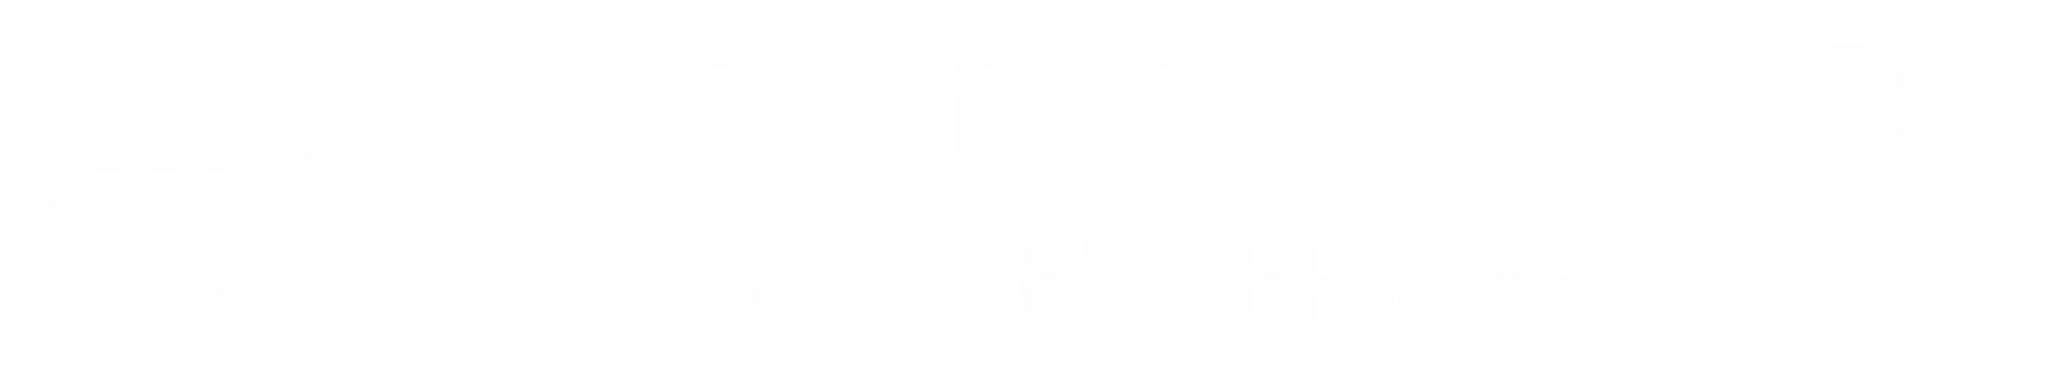 KFZ Meisterwerkstatt Patrick Roggen Header Logo